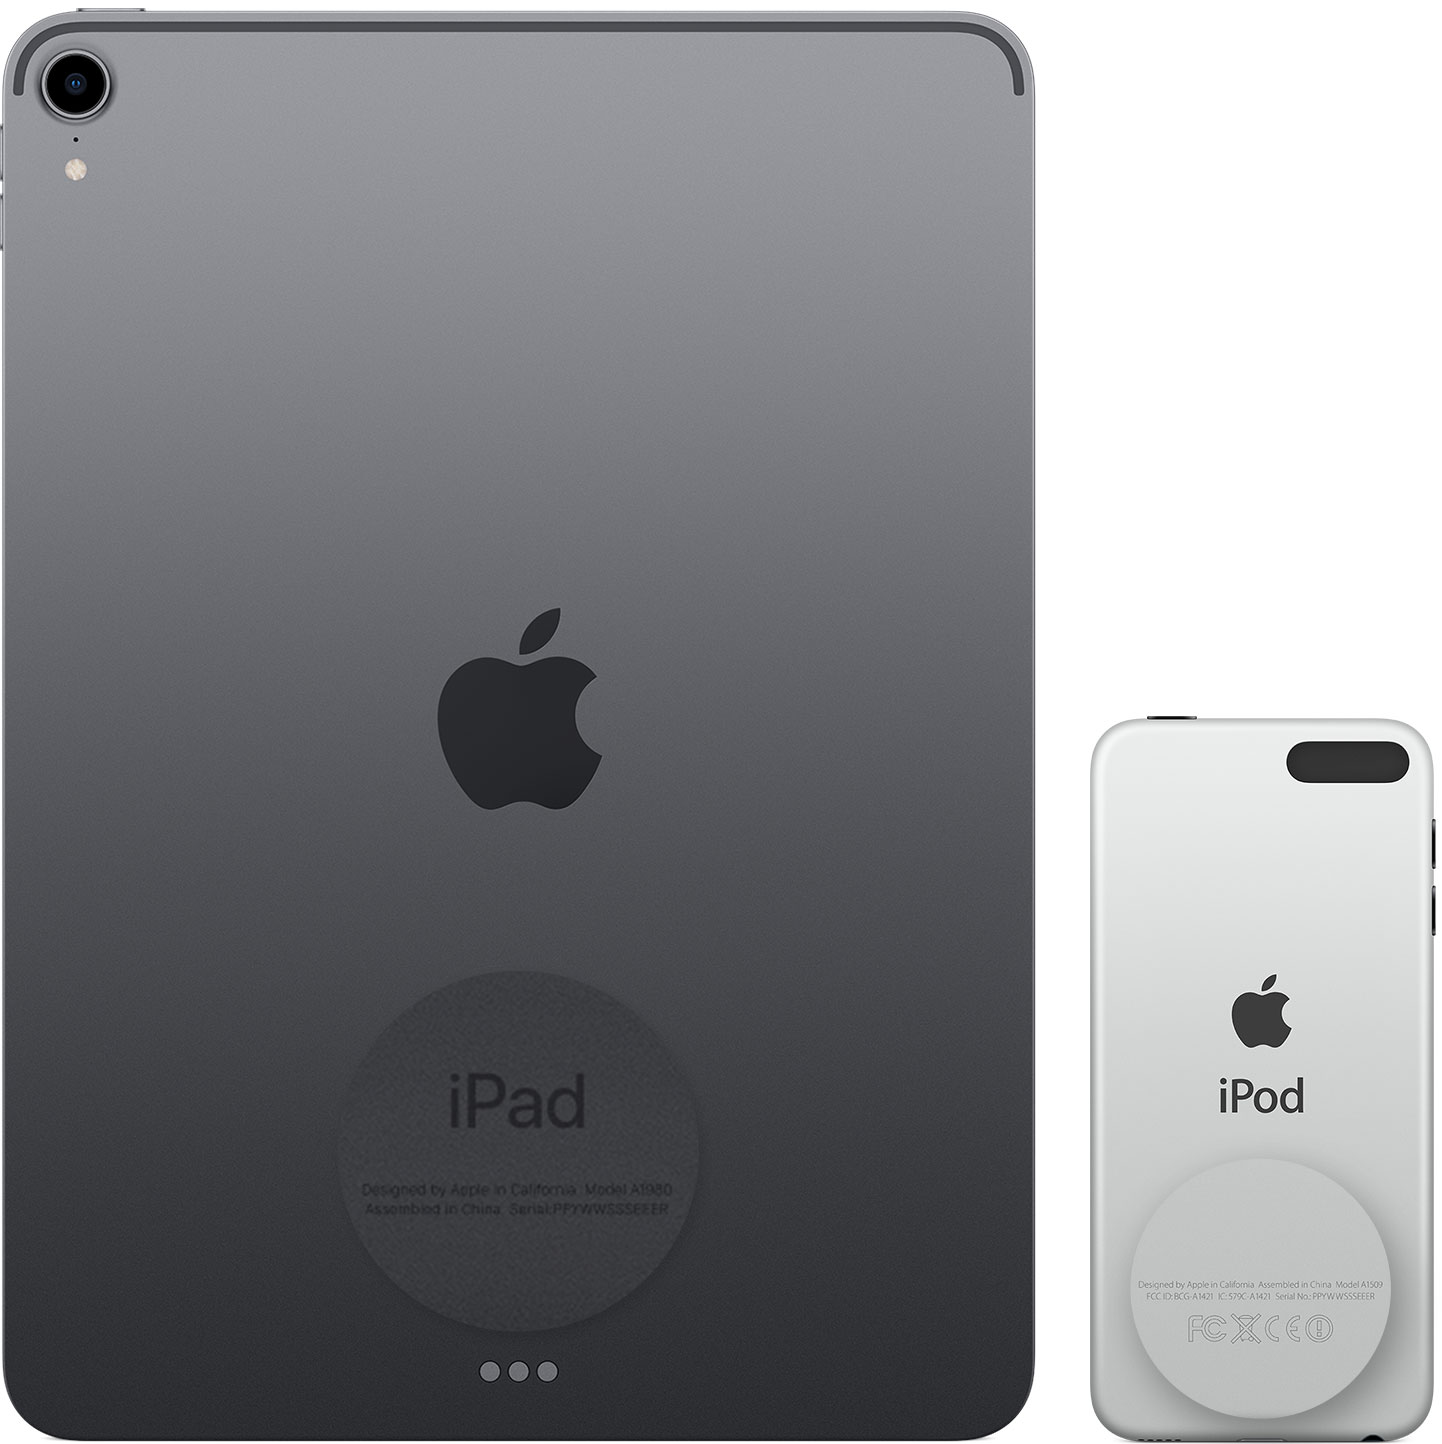 Изображение, на котором показана задняя панель iPad и iPod touch